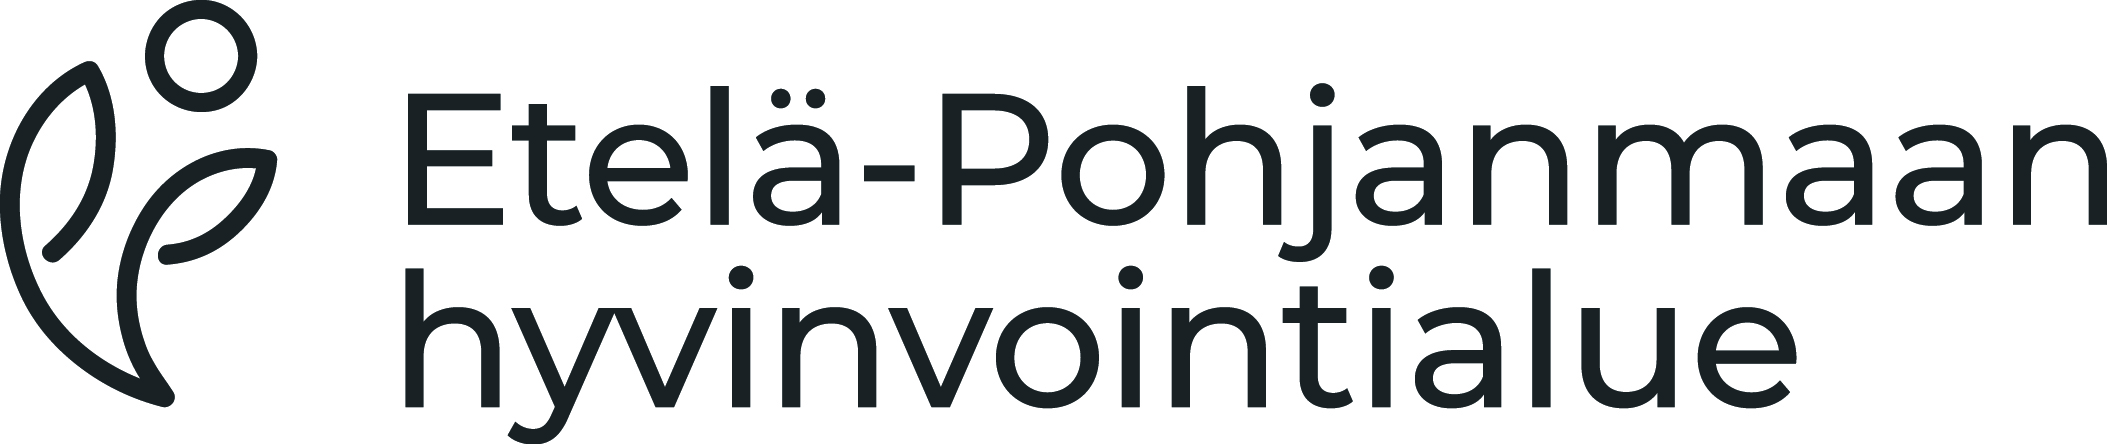 Etelä-Pohjanmaan sairaanhoitopiirin logo